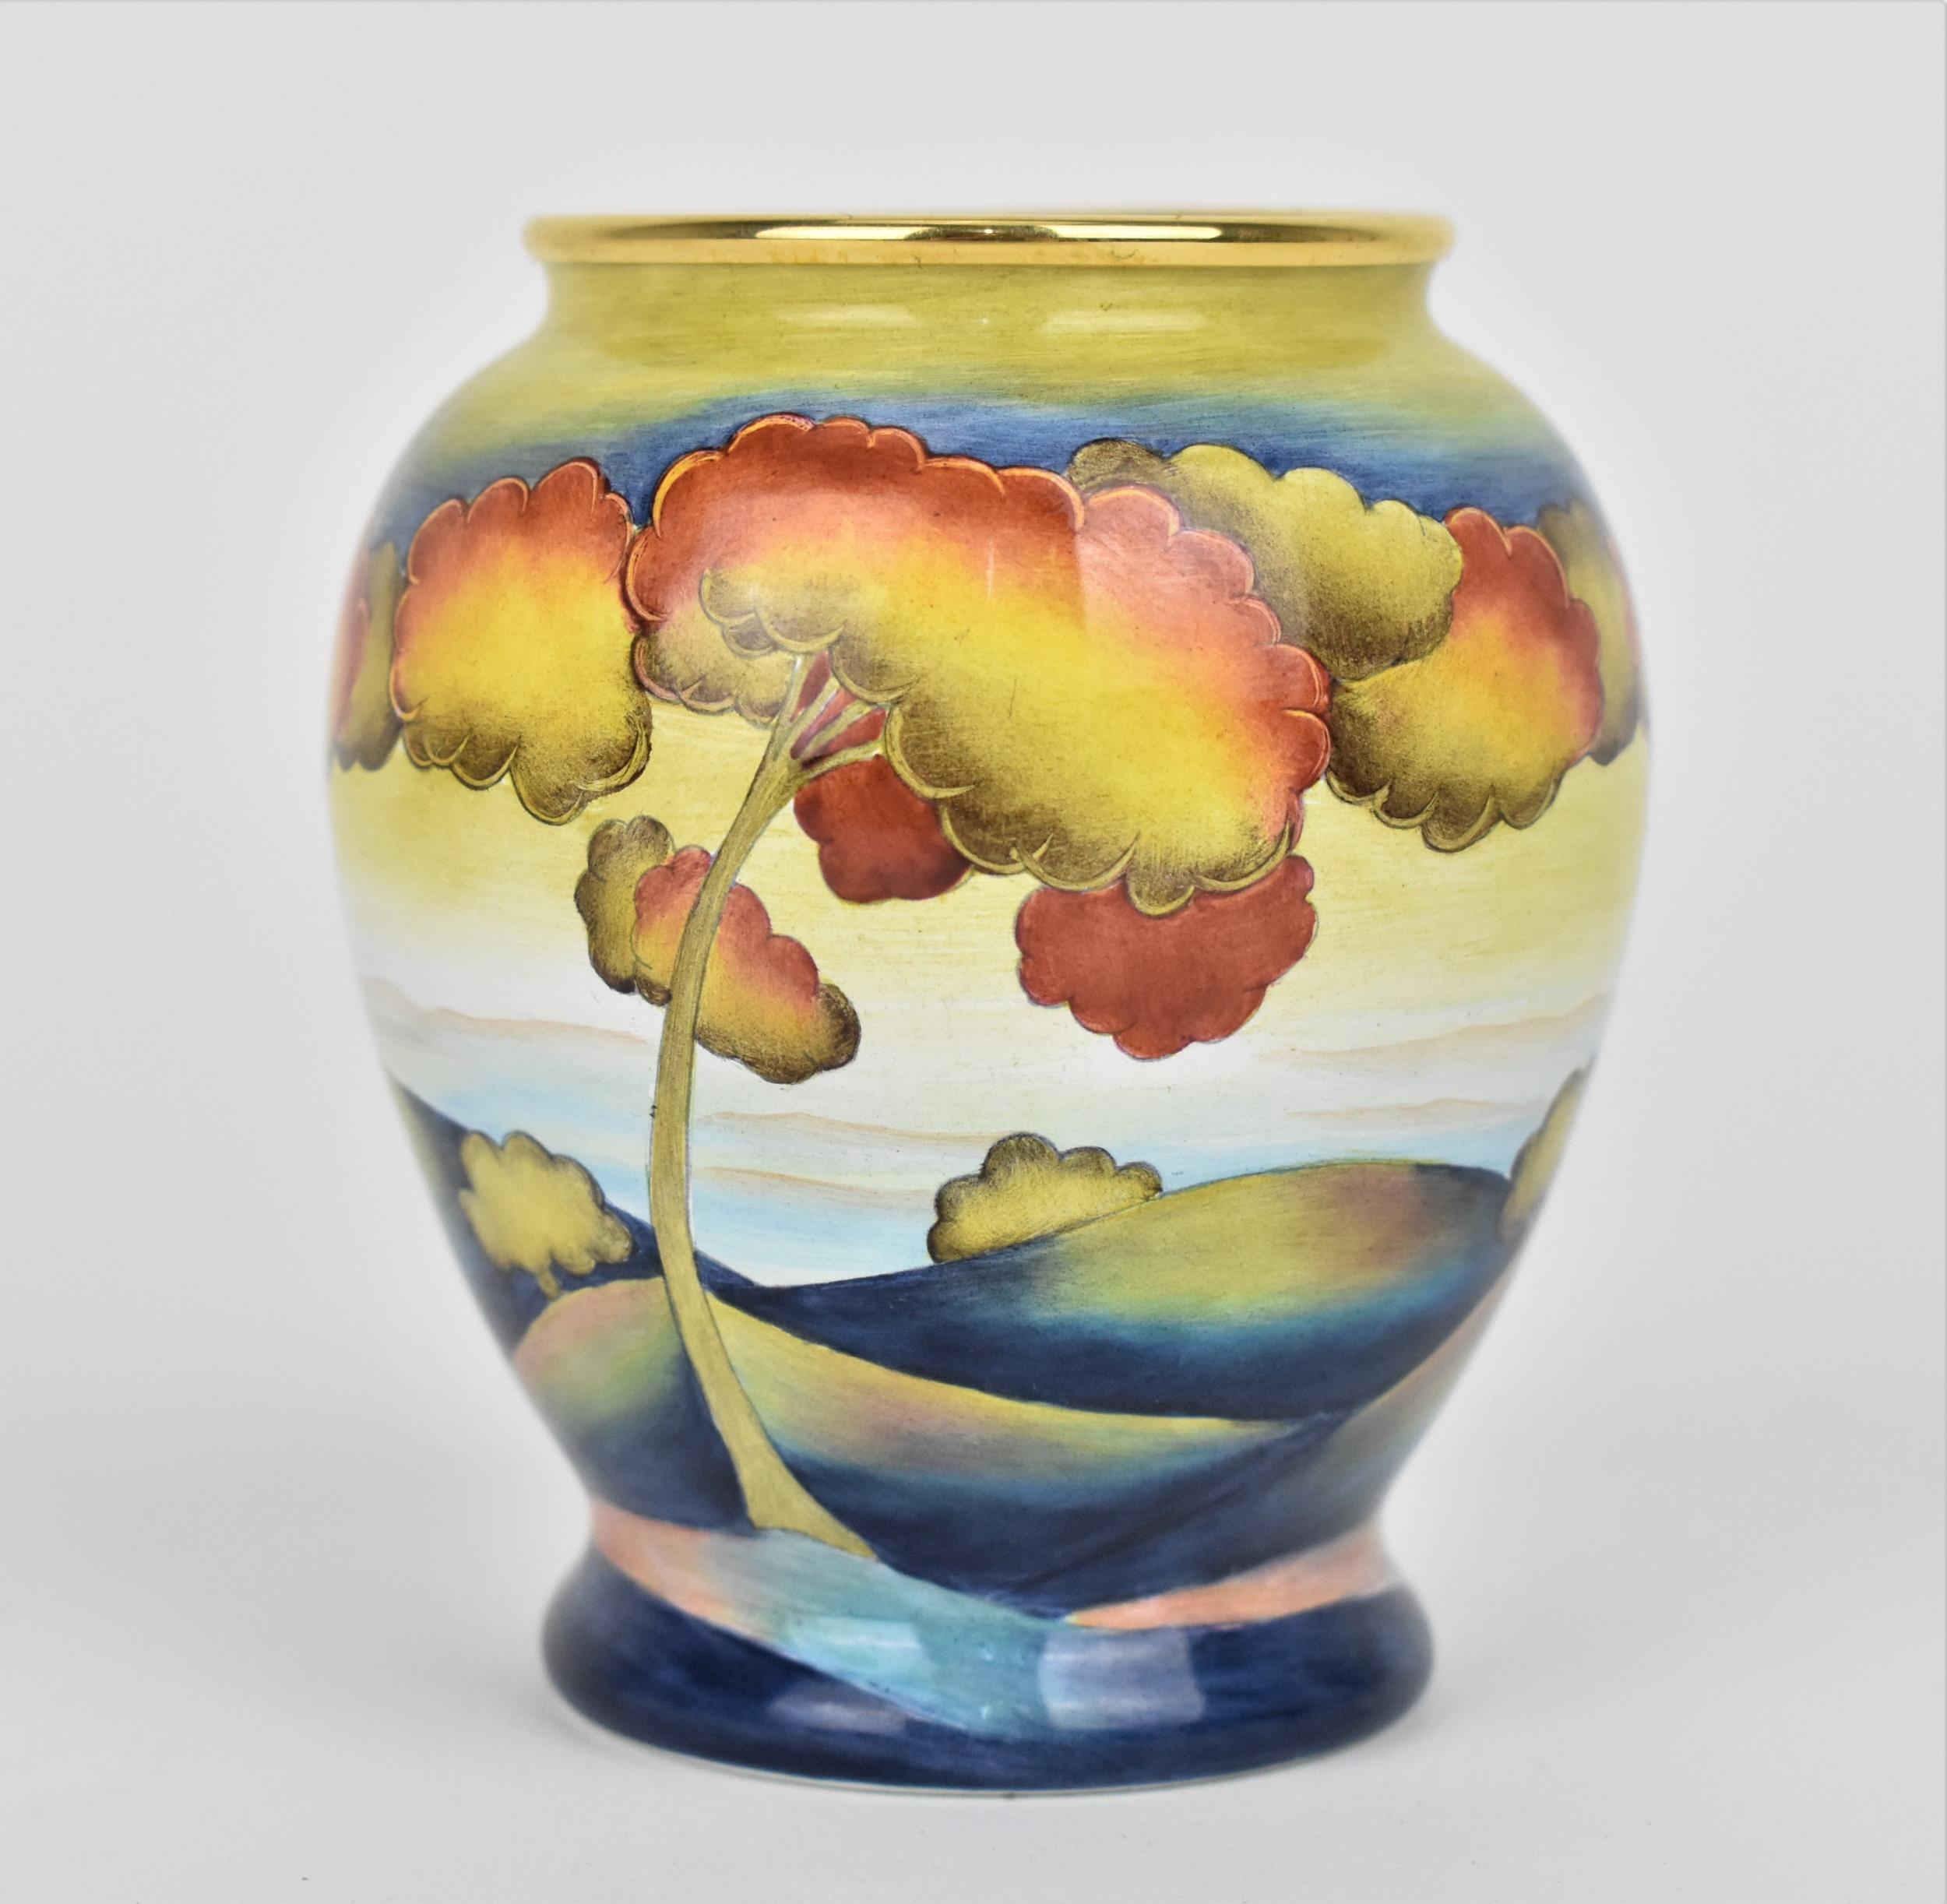 A limited edition Moorcroft Enamels Ltd miniature baluster vase in the 'Hazledene Sunset' by Carol